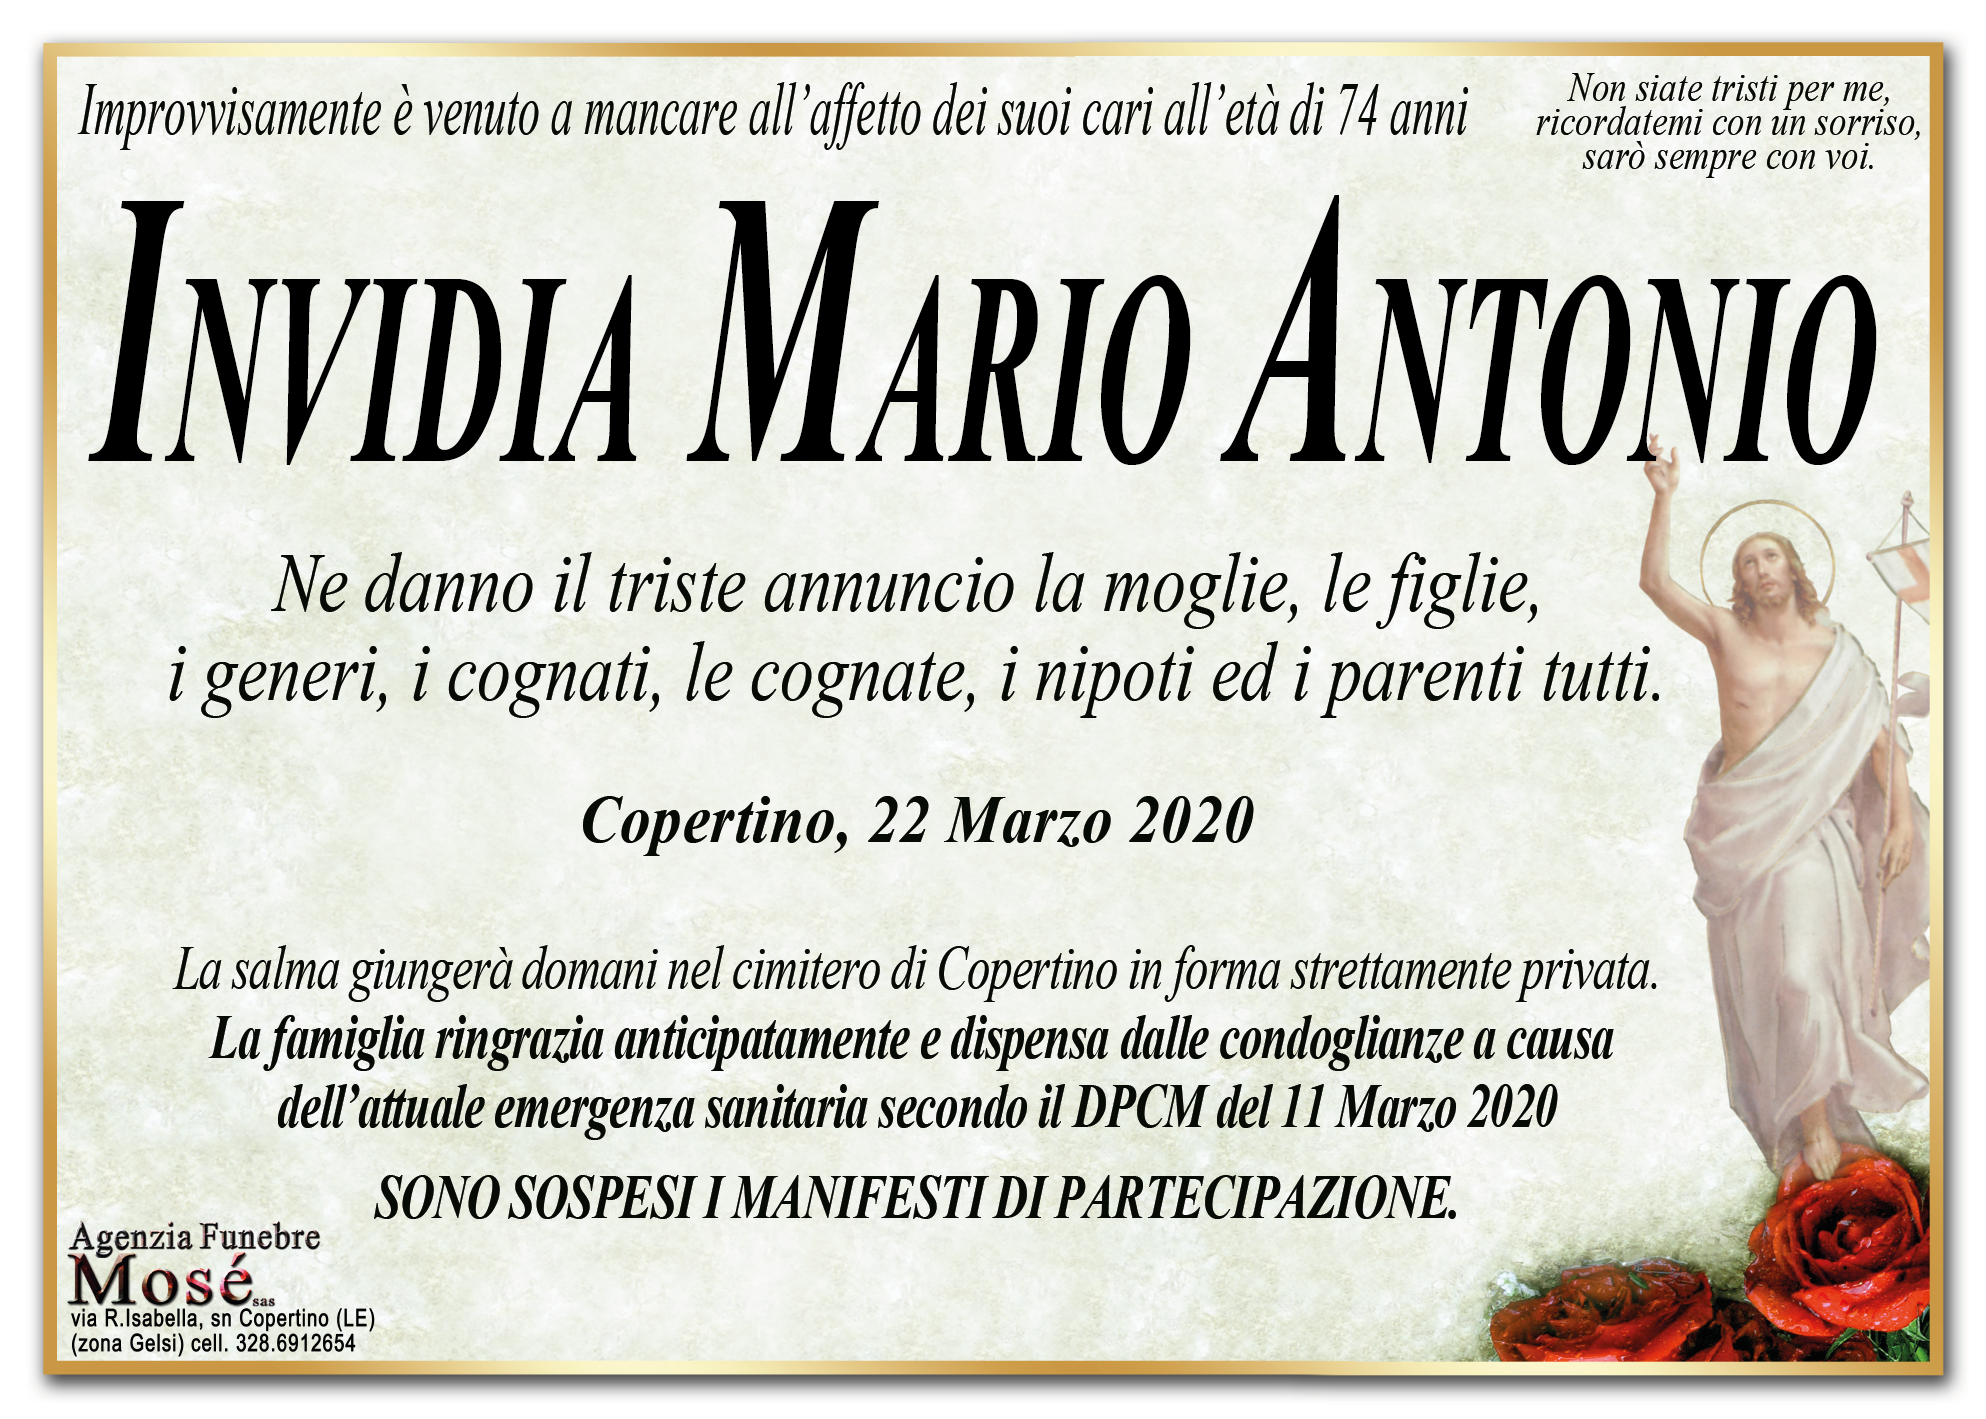 Mario Antonio Invidia